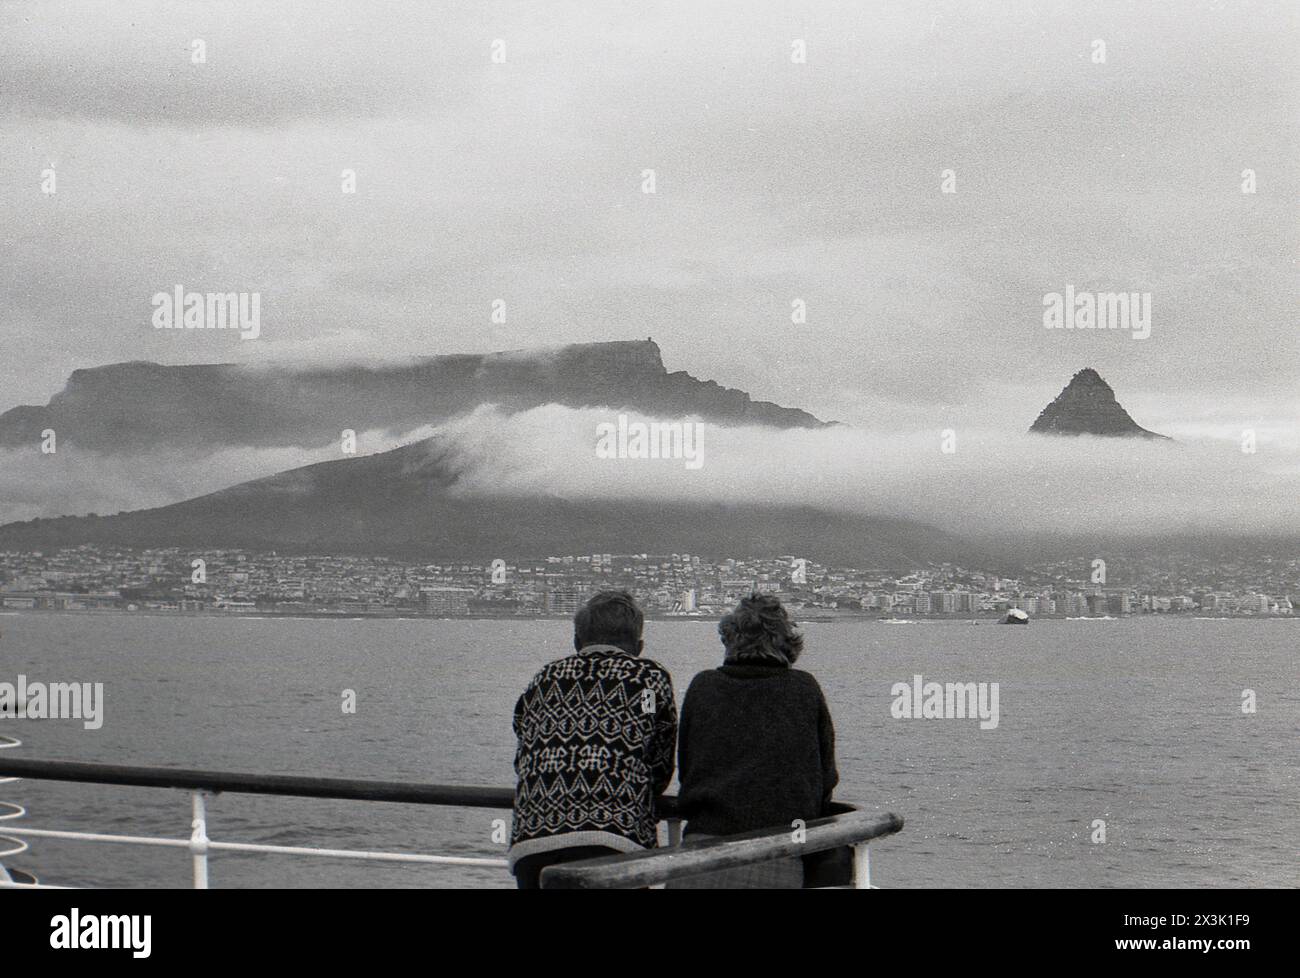 1960er Jahre, historisch, zwei Passagiere stehen auf dem Balkon eines Kreuzfahrtschiffes mit Blick auf die Skyline des Tafelbergs, auf der Kap-Halbinsel Südafrika, Wolken über den Bergen. Stockfoto